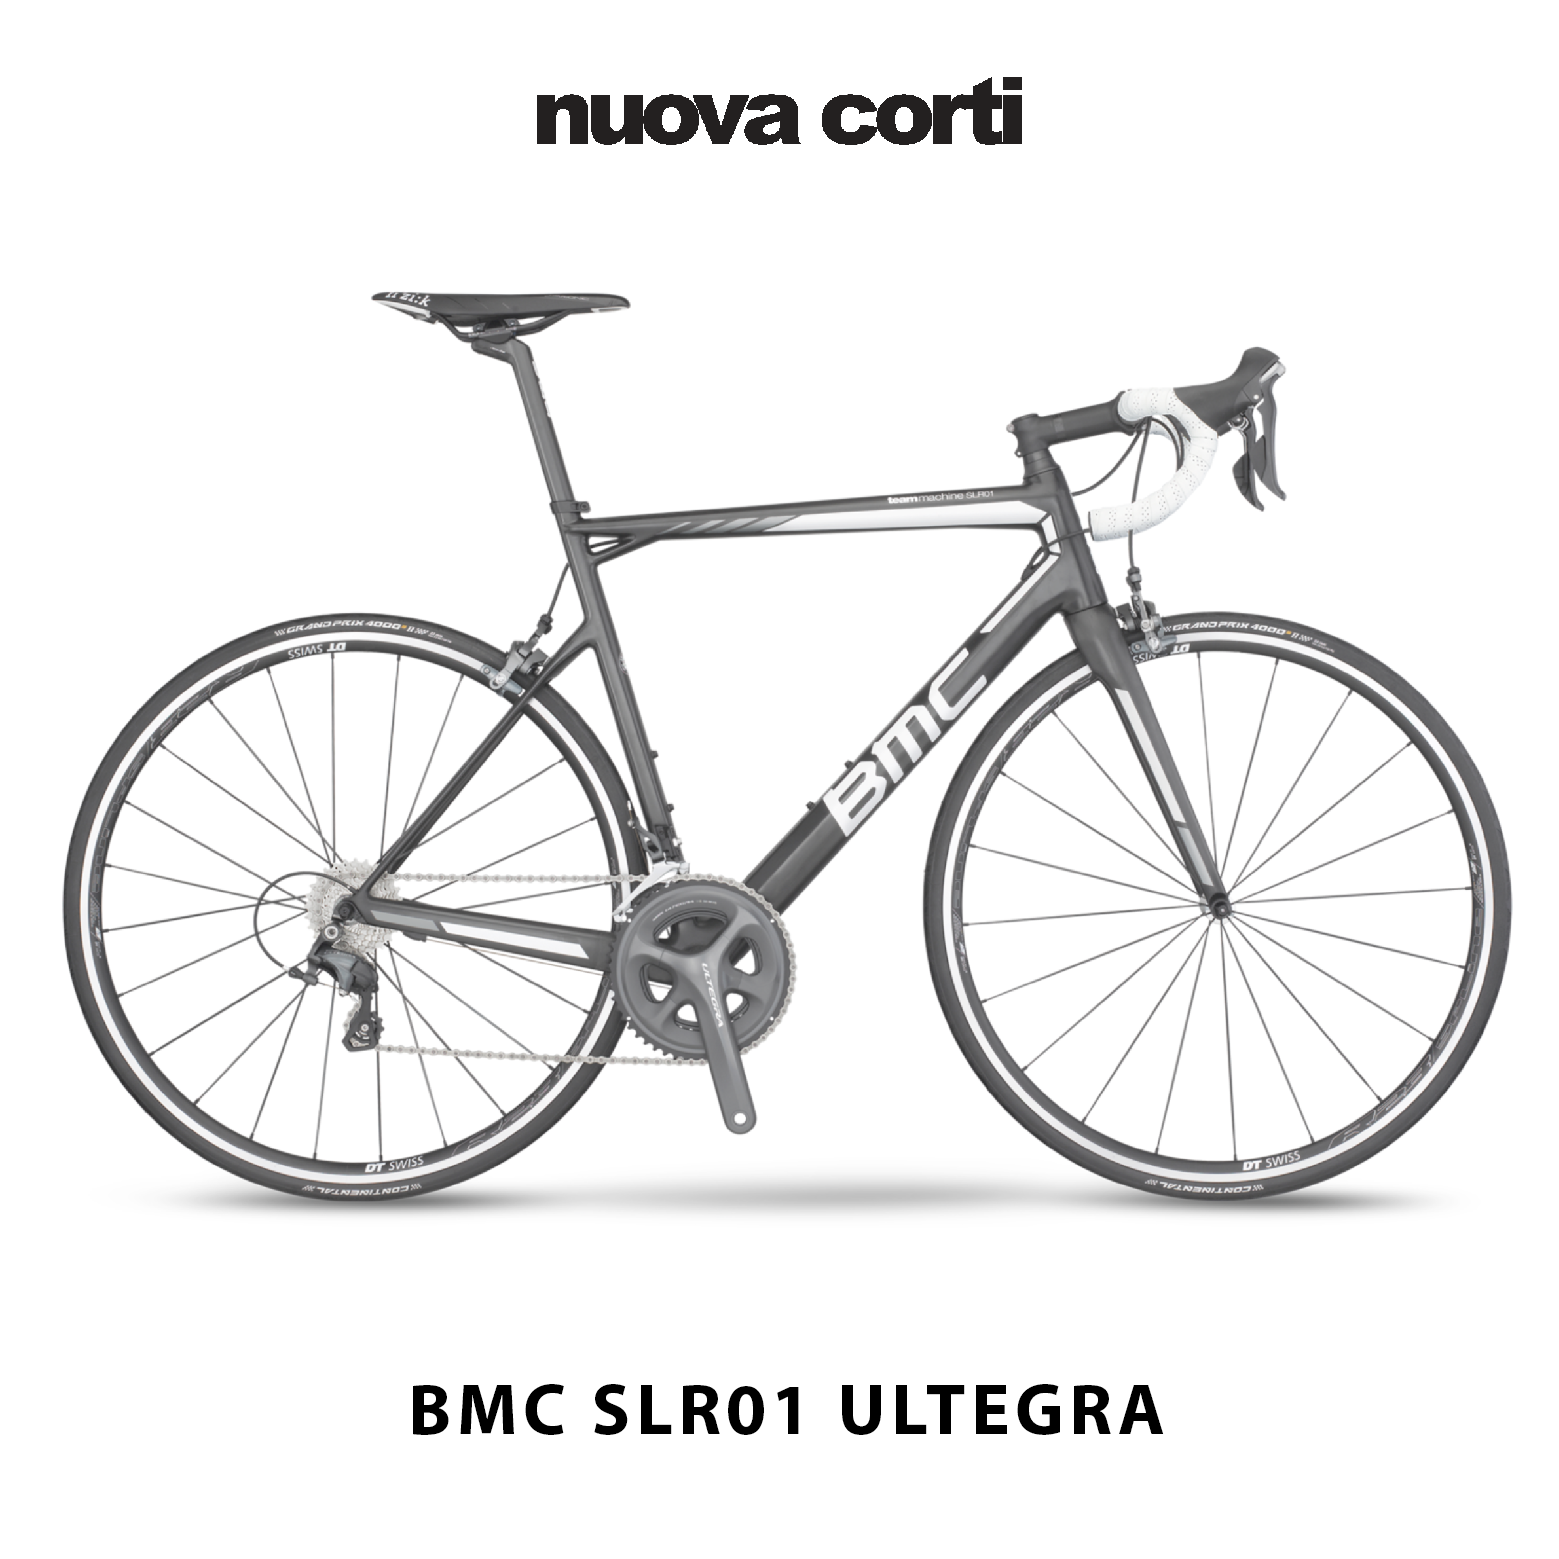 BMC slr01 Ultegra, nuova corti, vendita, biciclette, sassuolo, bmc